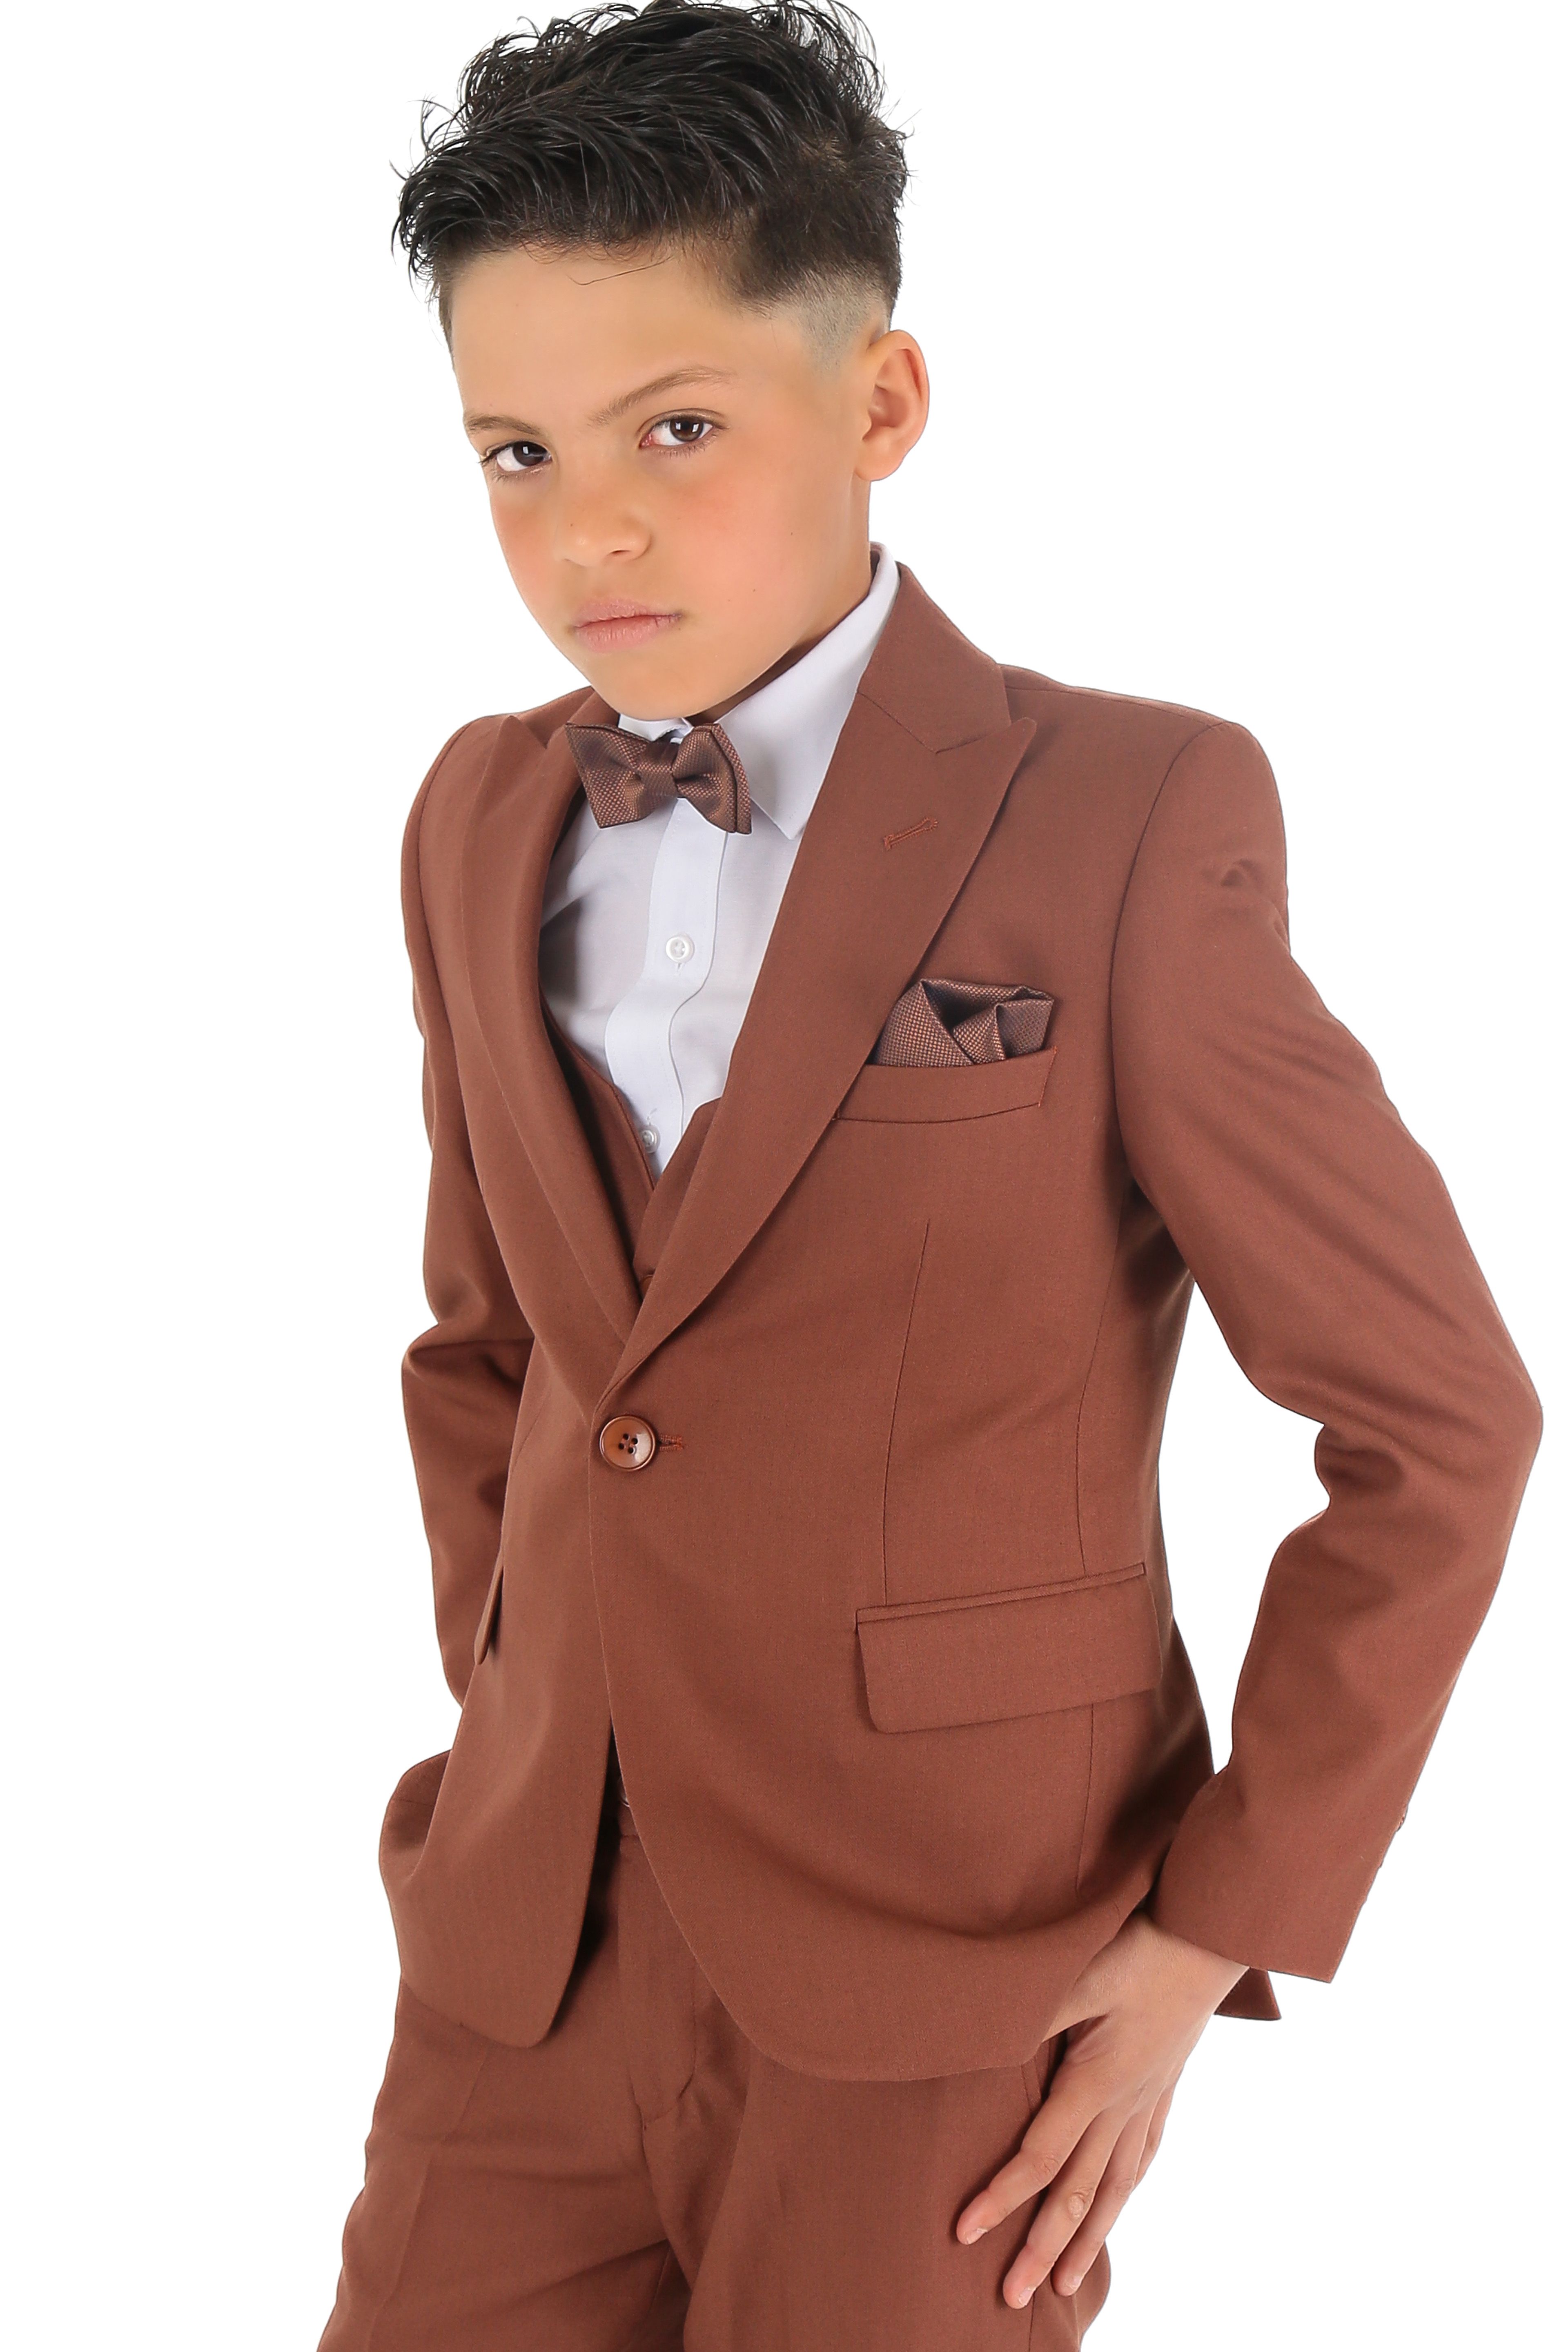 1-15 Yaş Erkek Çocuk King Özel Tasarım Takım Elbise 6 Parça - Tarçın